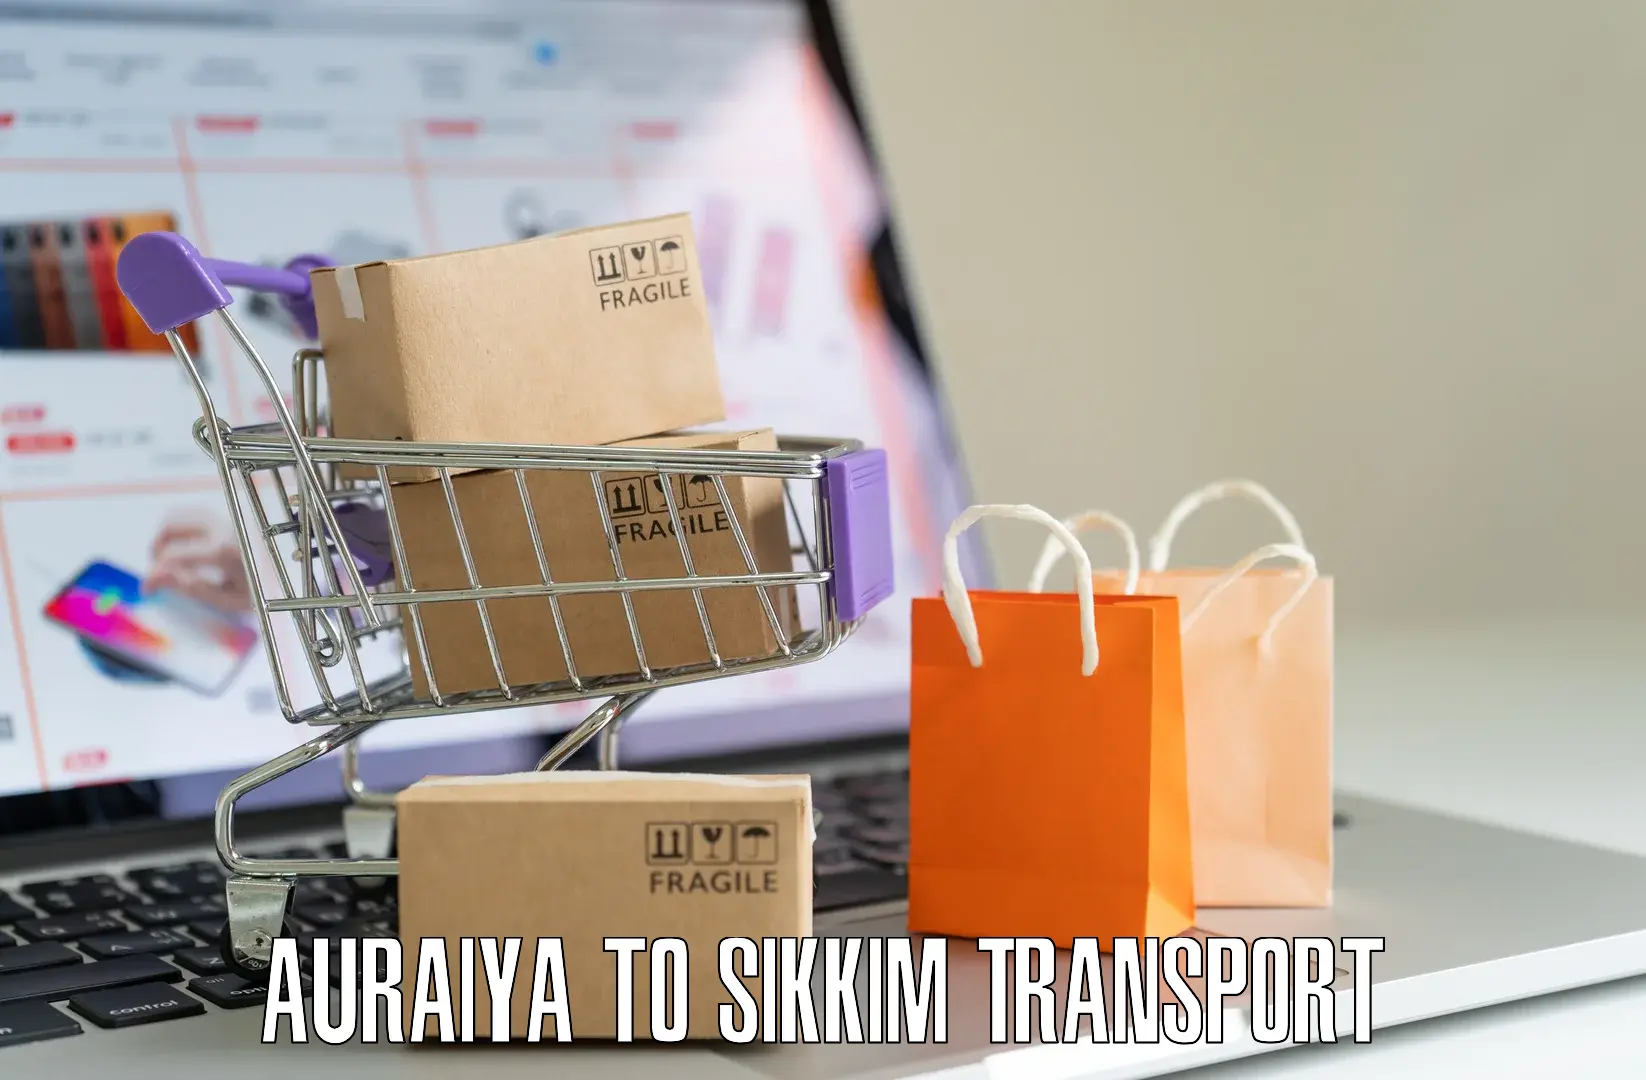 Air cargo transport services Auraiya to Sikkim